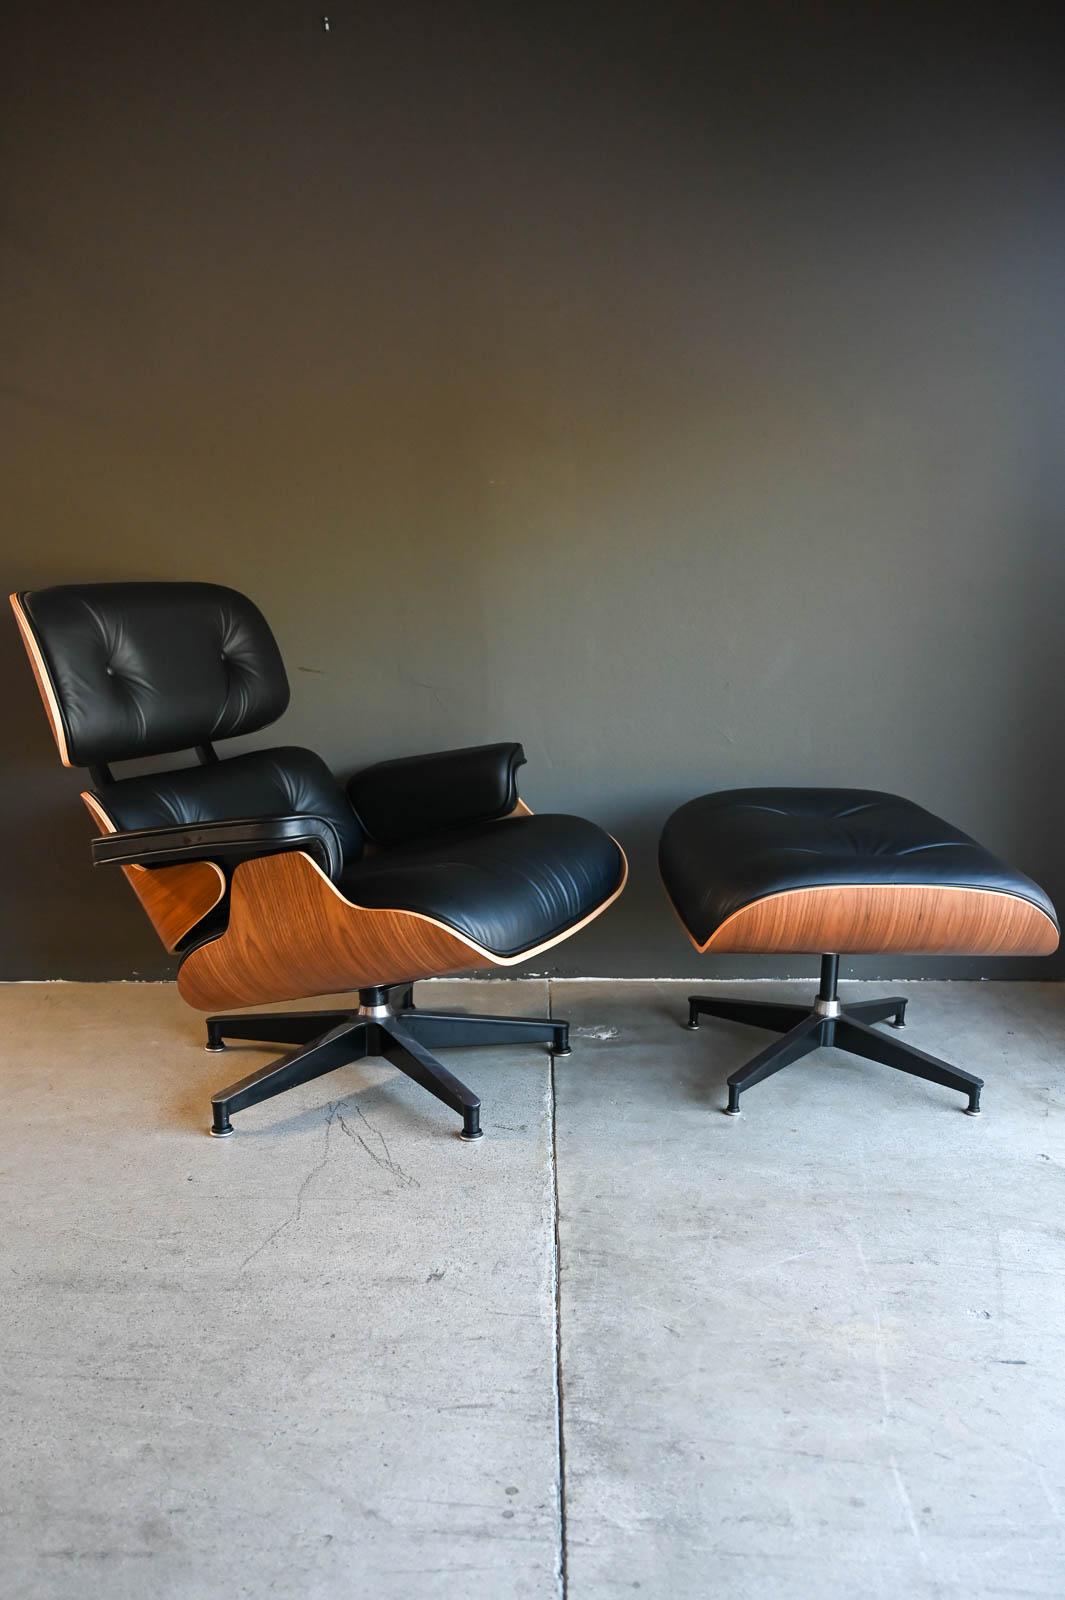 Charles Eames für Herman Miller 670/671 Lounge Chair und Ottoman, 2021.  Schöne fast neue Charles Eames Lounge Stuhl mit Ottomane in begehrten 2100 Serie glatten schwarzen Leder.  Stuhl wurde nie benutzt, nur für die Inszenierung und ist in